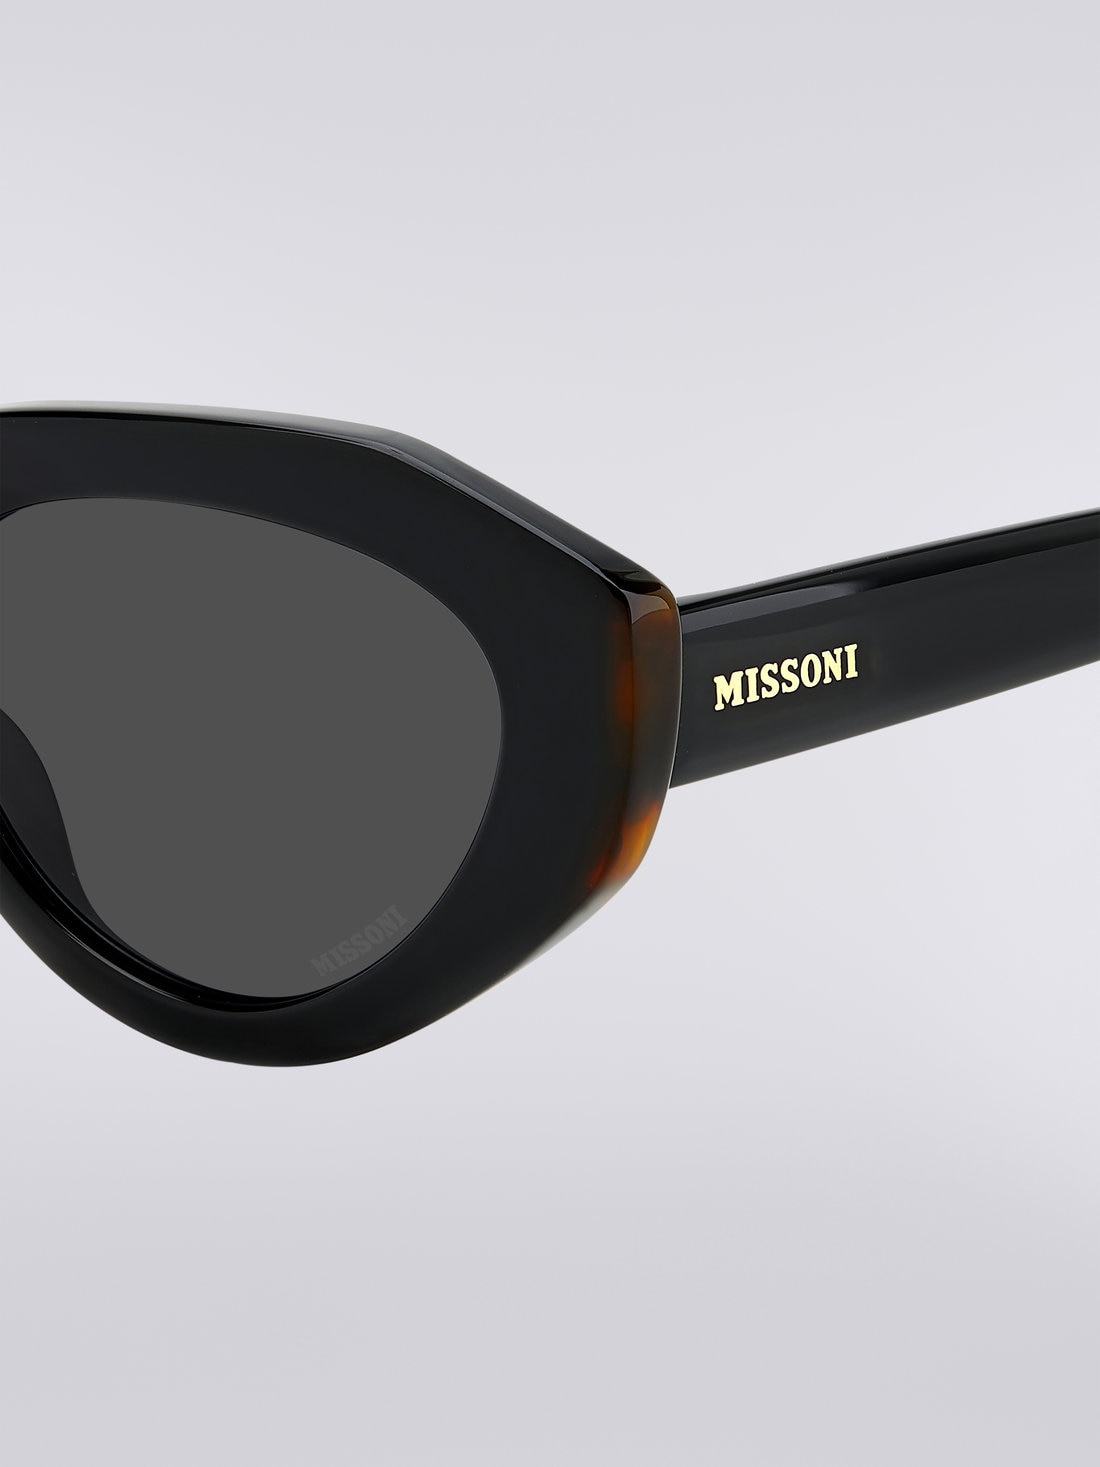 Gafas de sol Missoni Seasonal de acetato, Negro    - 8051575840166 - 3